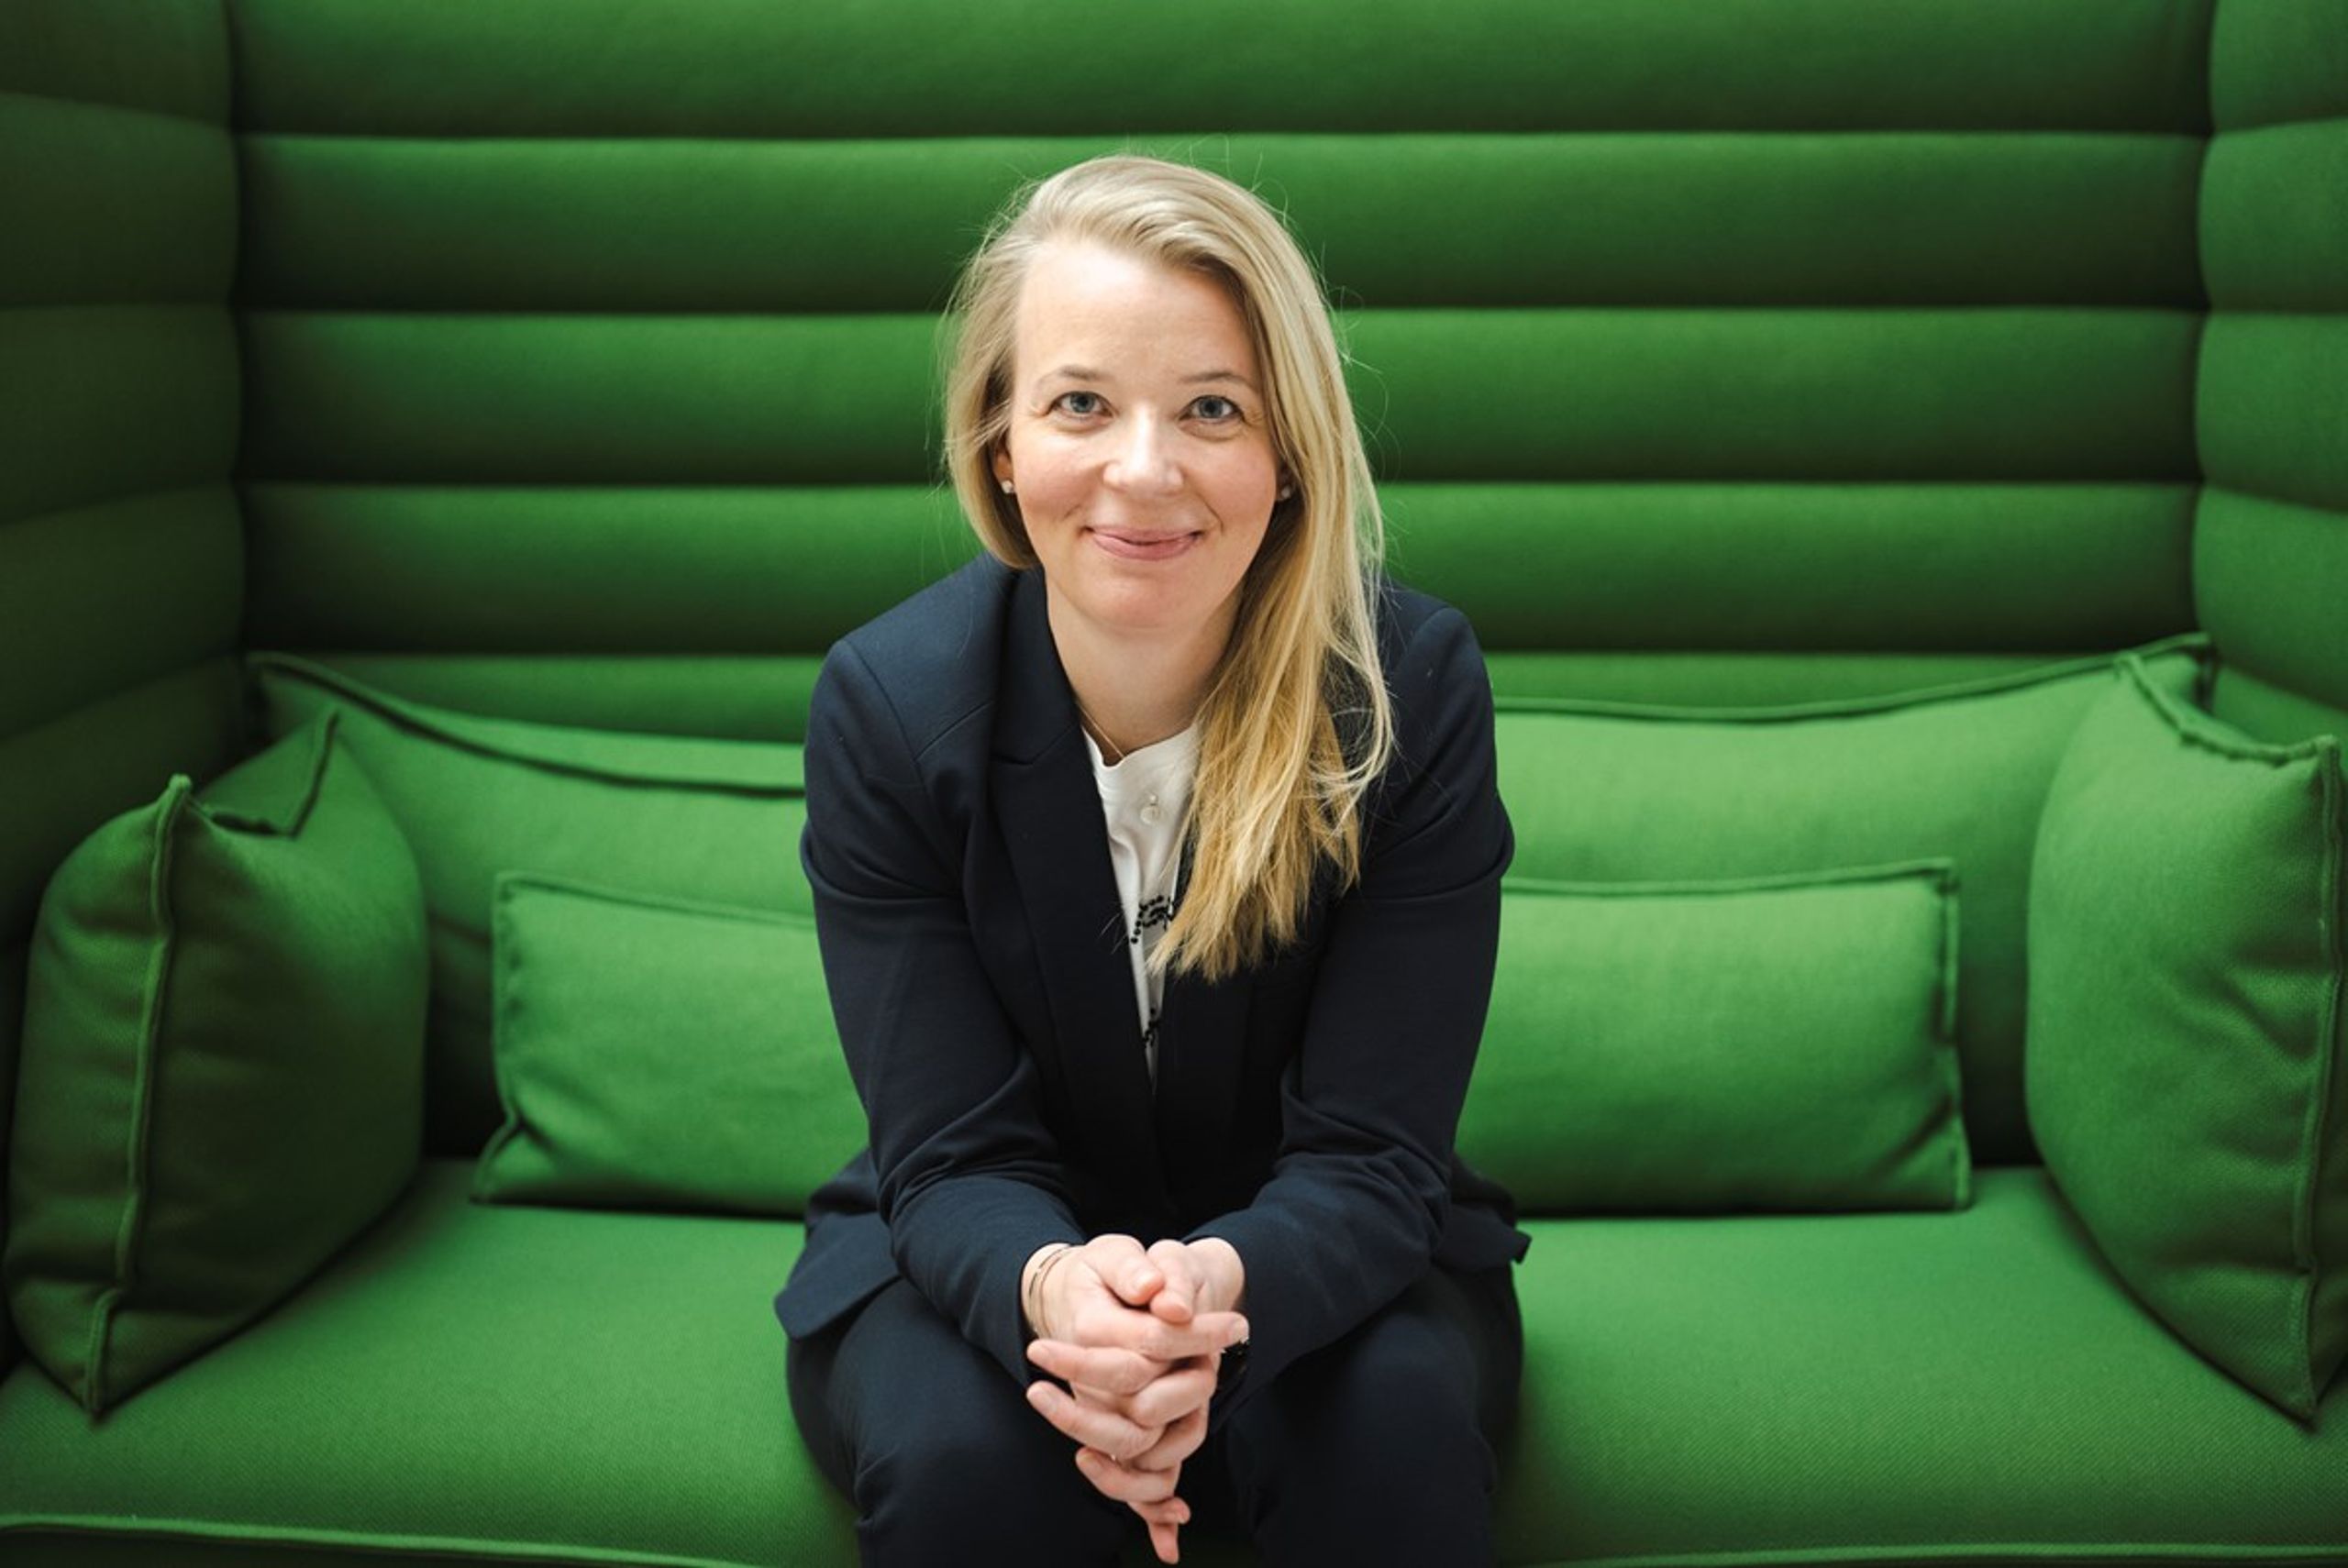 Sine Linderstrøm, chef for SMV og iværksætteri hos DI, har indsamlet ønsker til regeringens iværksætterstrategi fra det danske startup-miljø. I slutningen af april forventer hun at præsentere DI's ønsker til, hvordan de 300 millioner kroner i strategien skal bruges.